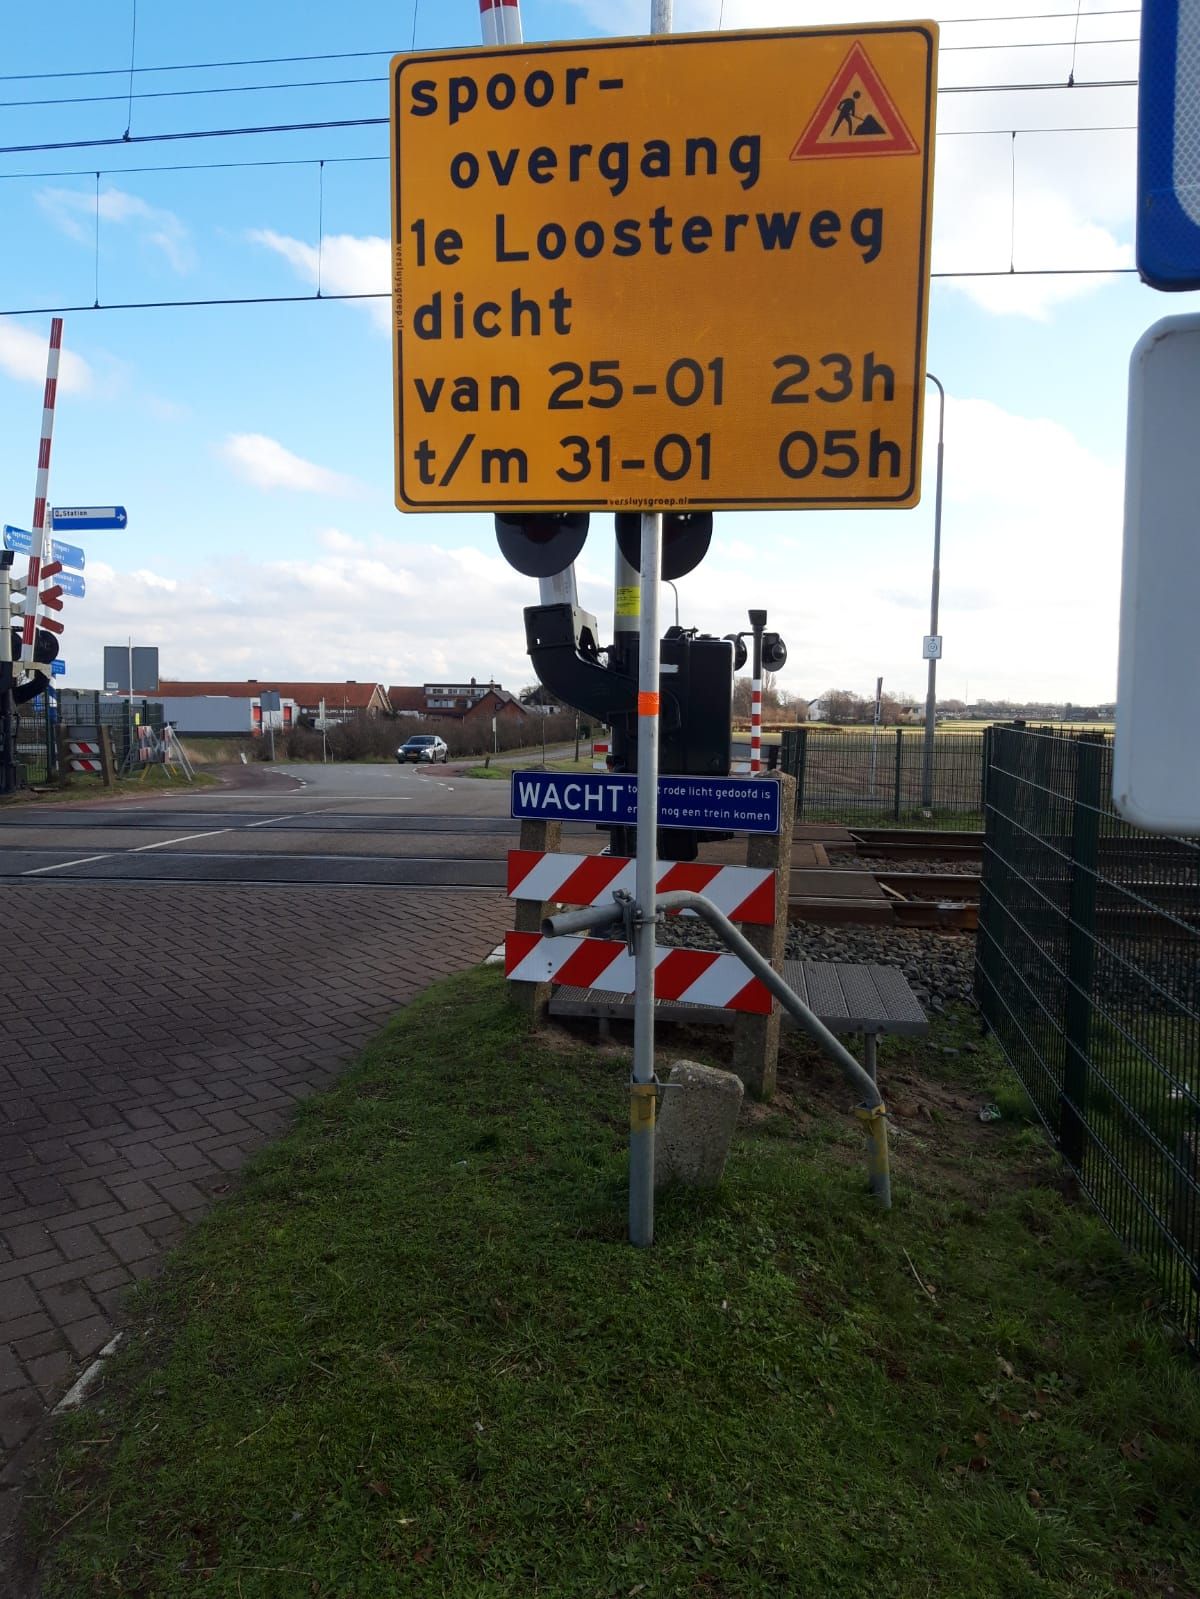 Verkeershinder: Spoorwegovergang 1e Loosterweg afgesloten.